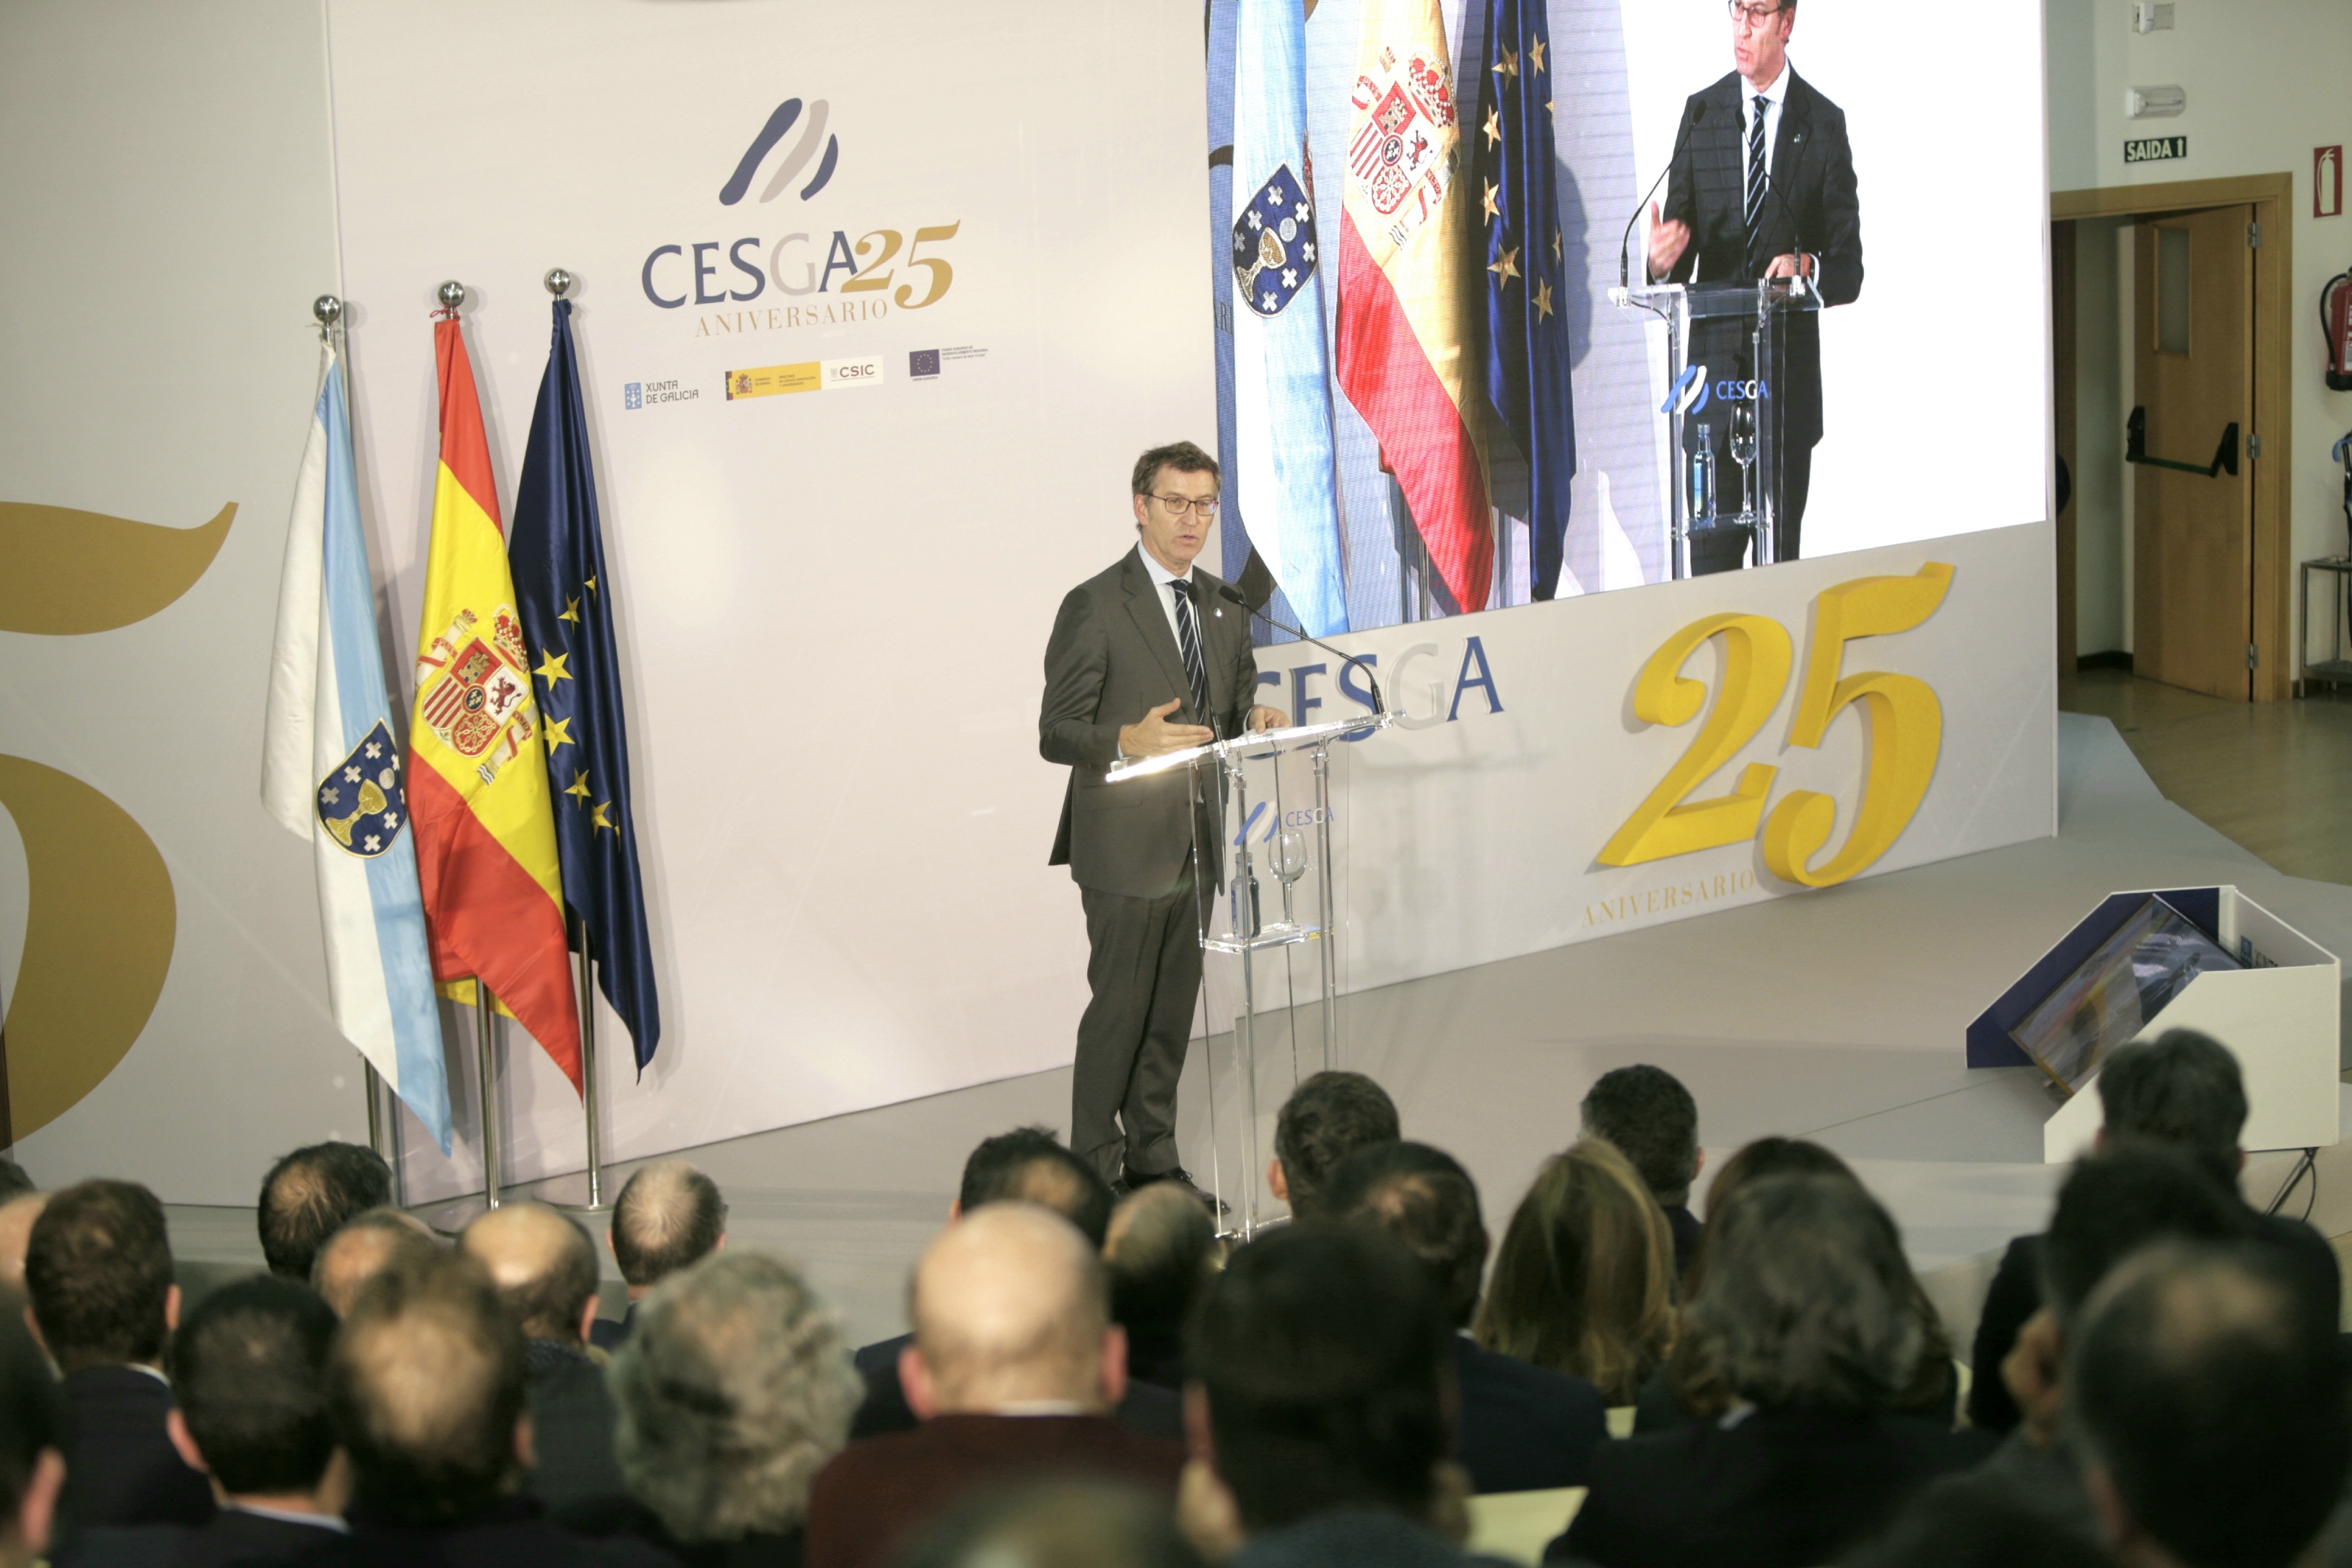 O titular do Goberno galego visitou as instalacións do Centro de Supercomputación de Galicia-CESGA con motivo do seu XXV aniversario.